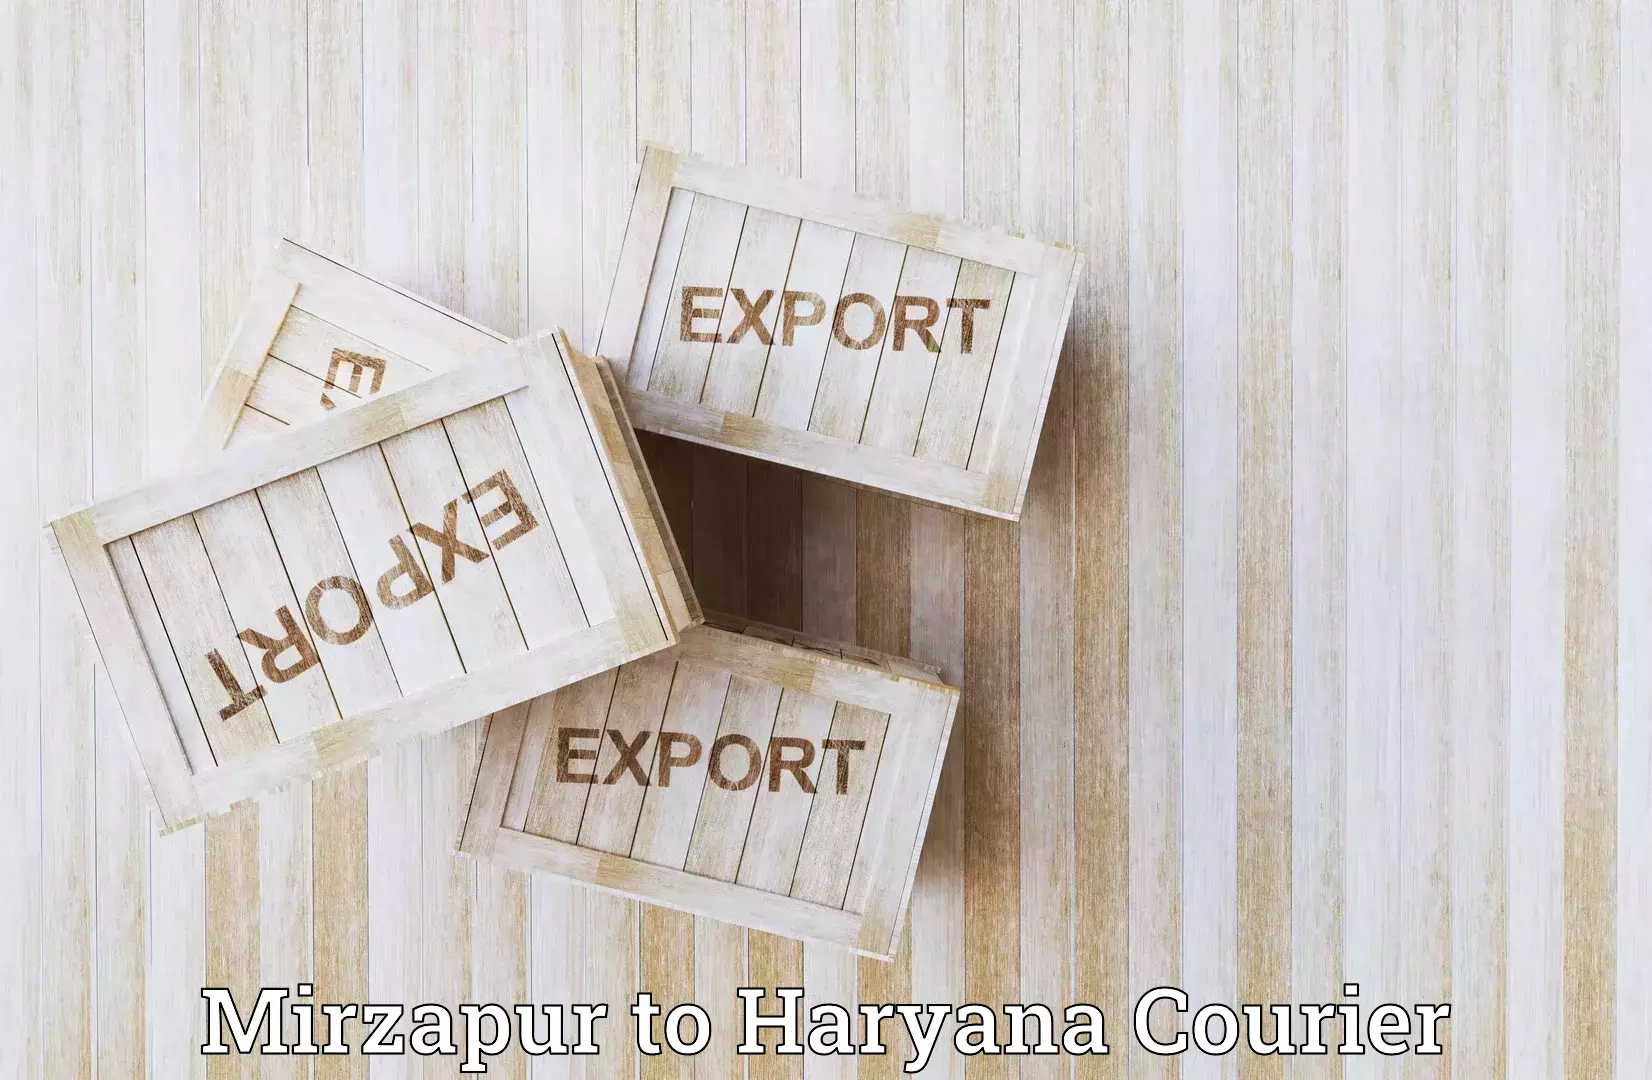 Urban courier service Mirzapur to Haryana